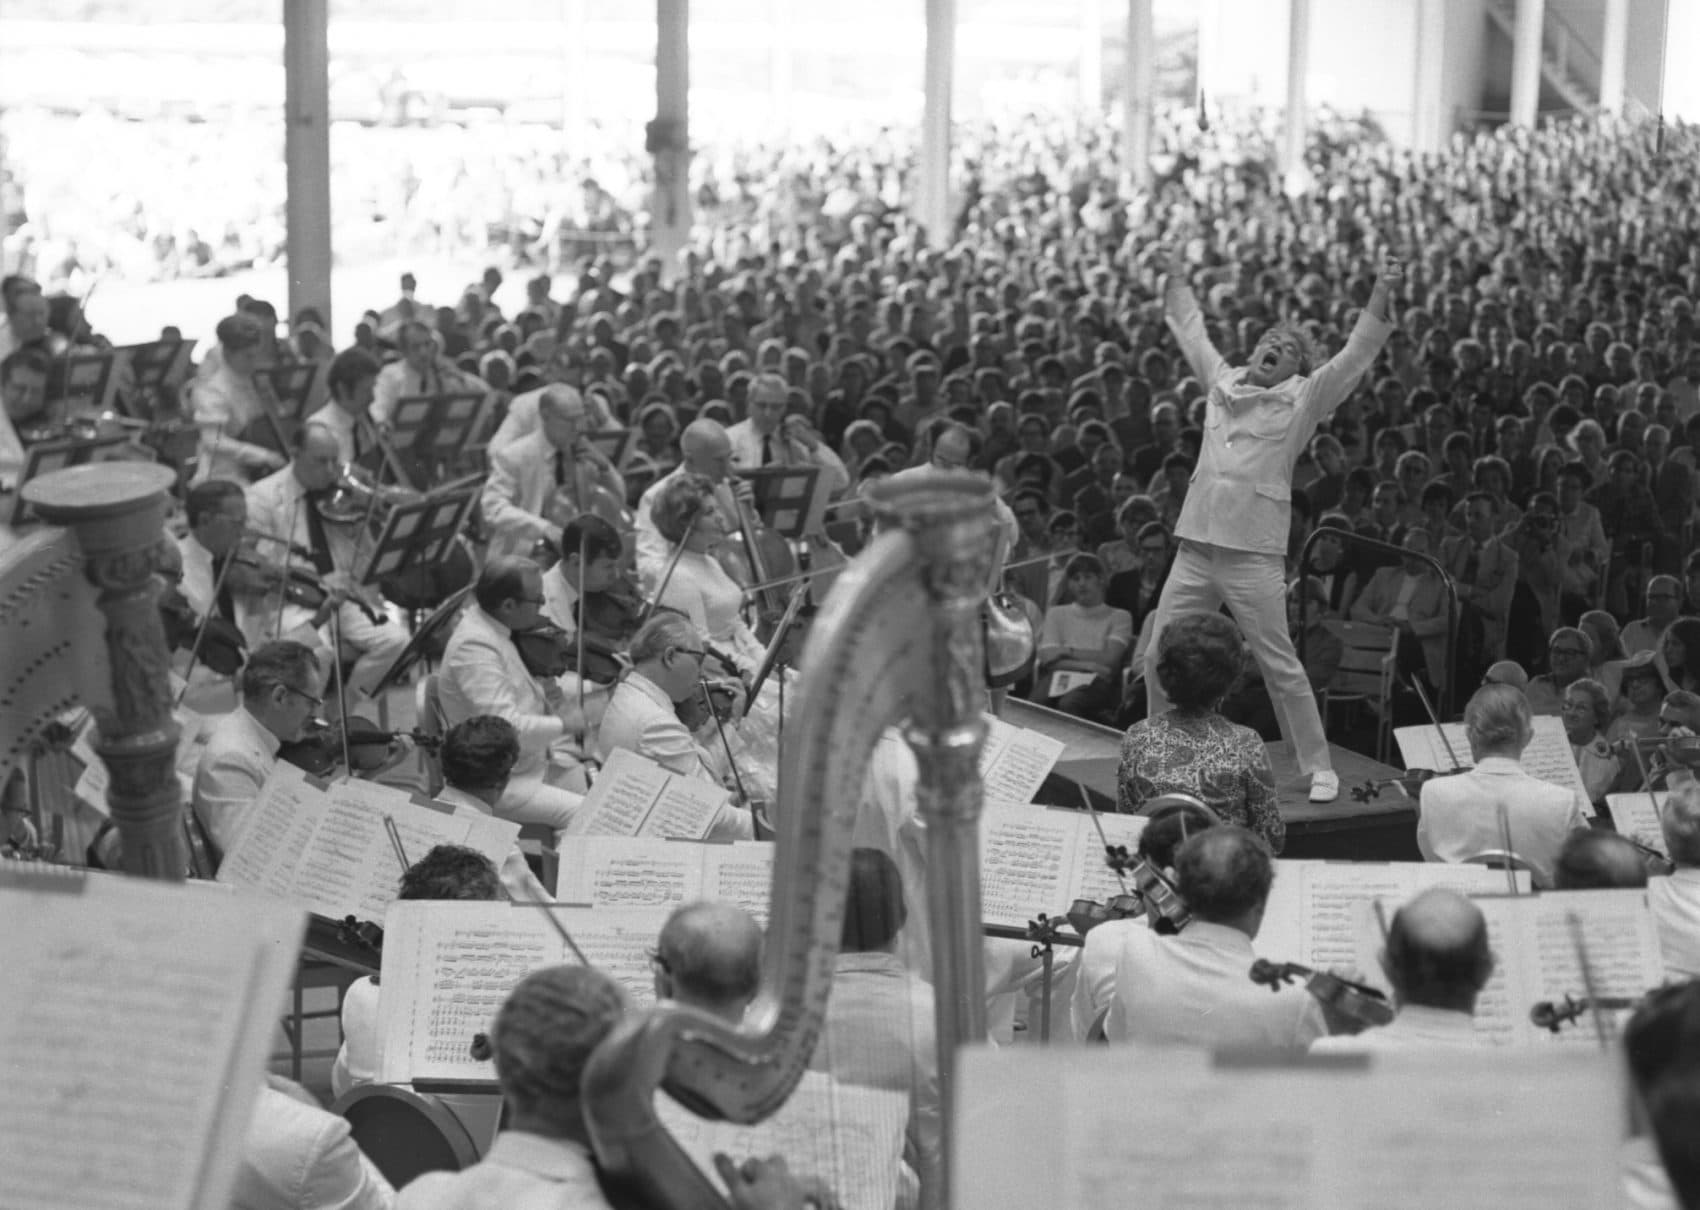 Leonard Bernstein conducting at Tanglewood. (Courtesy Heinz Weissenstein, Whitestone Photo/BSO)